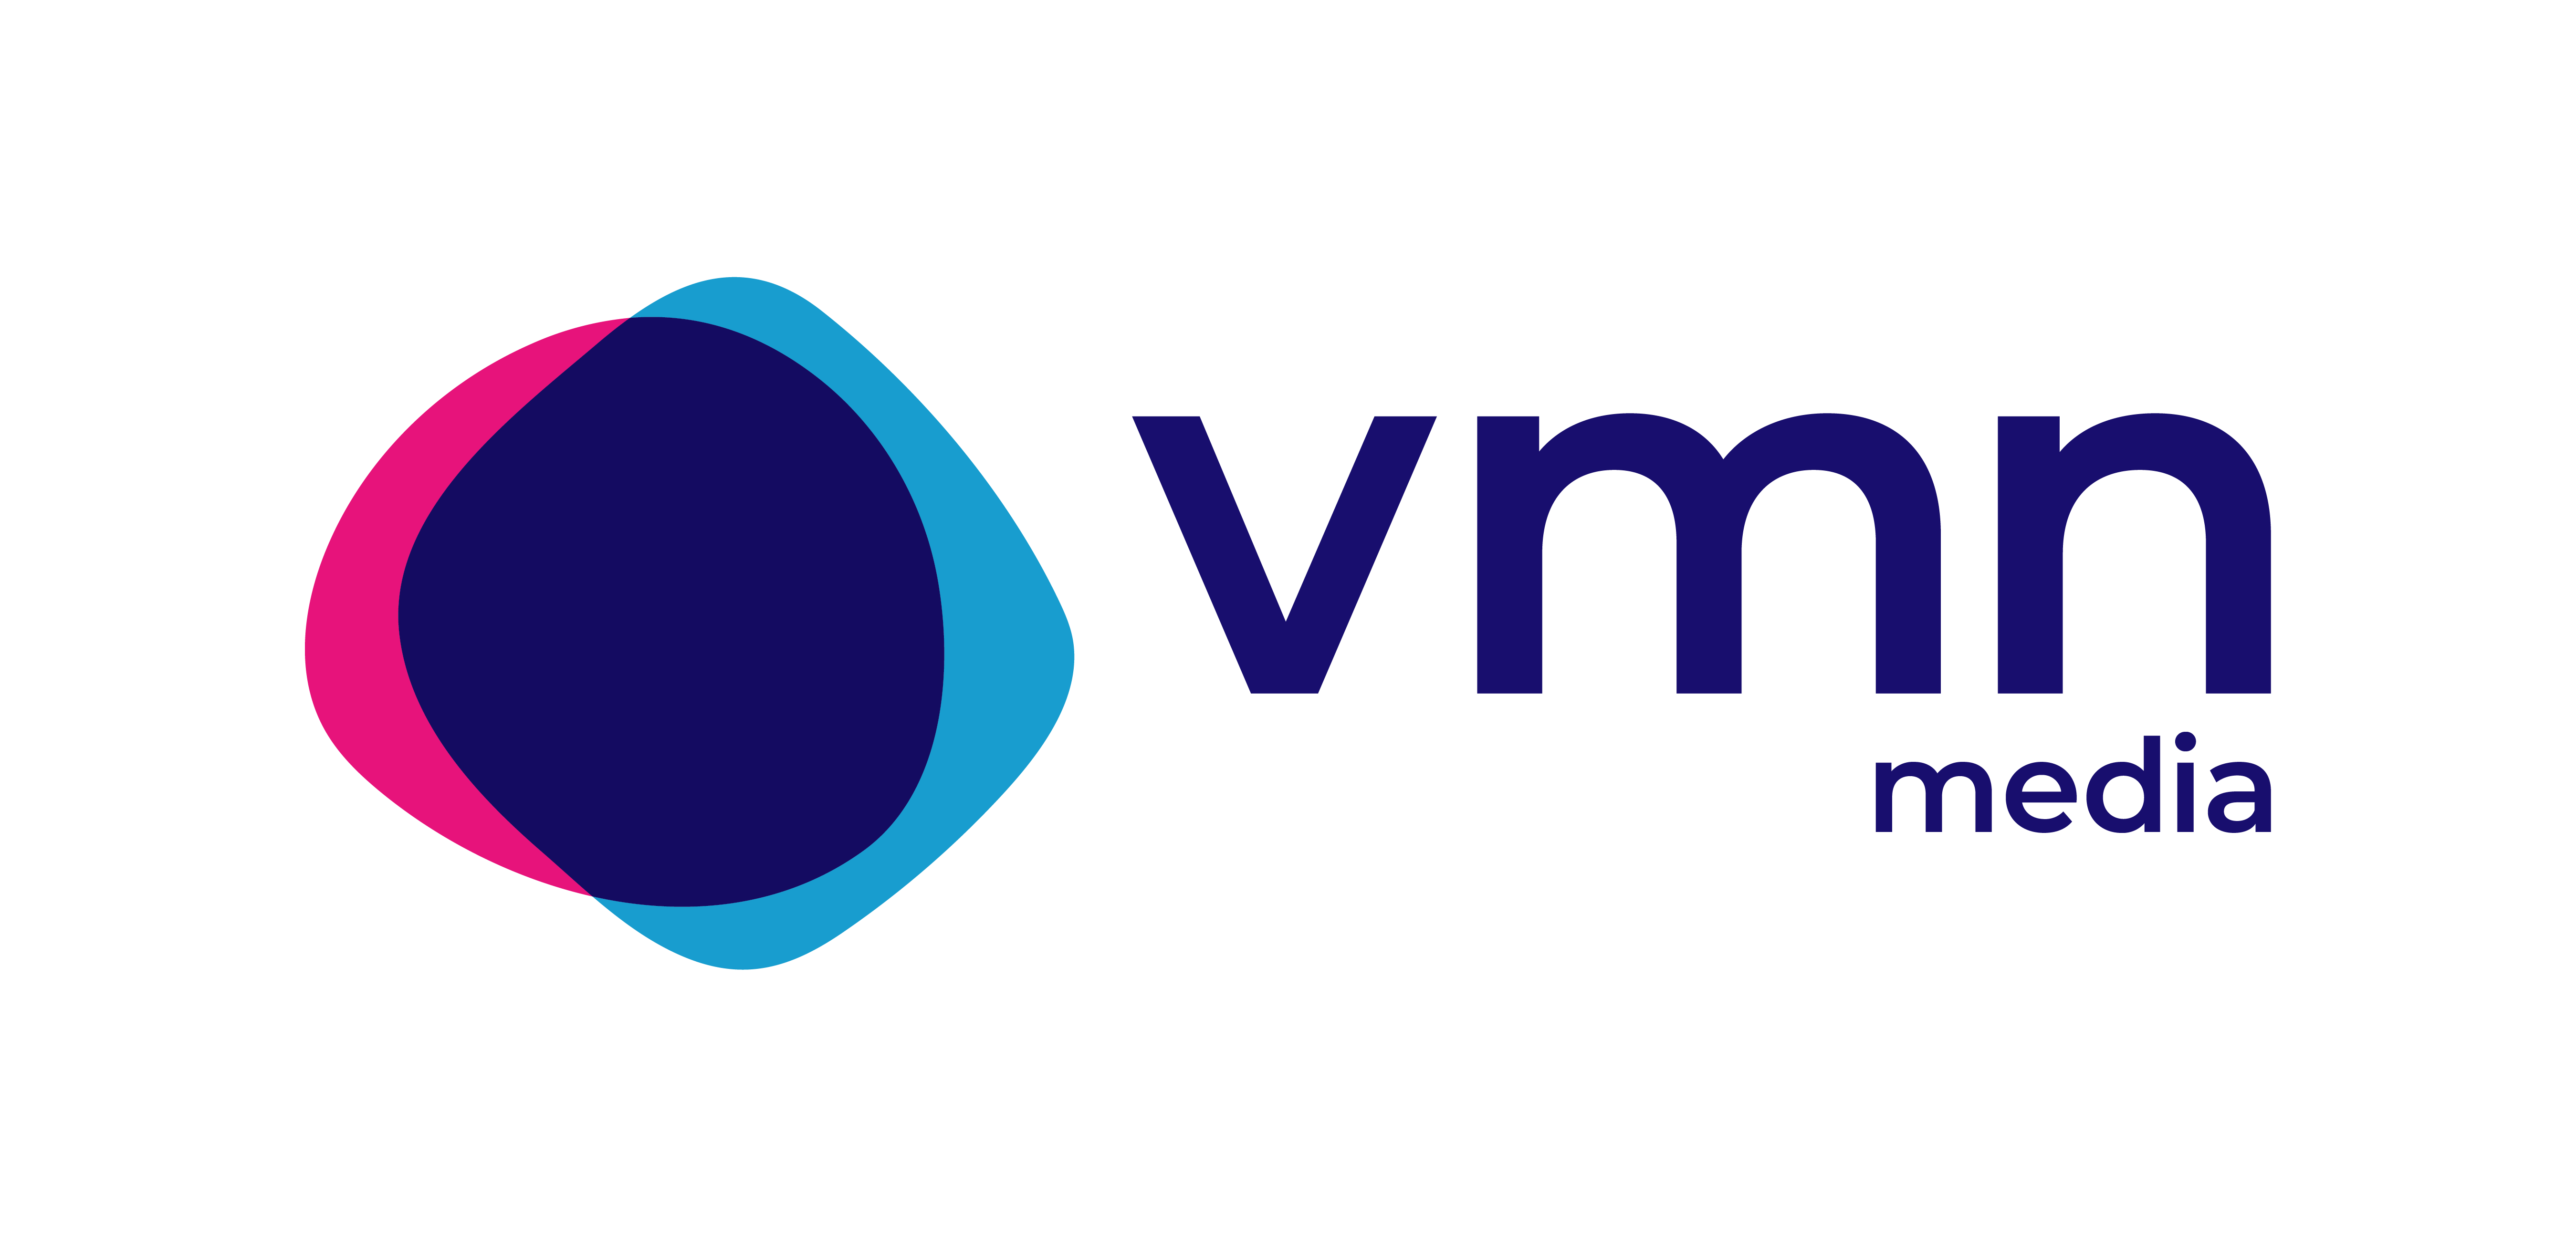 Vakmedianet logo